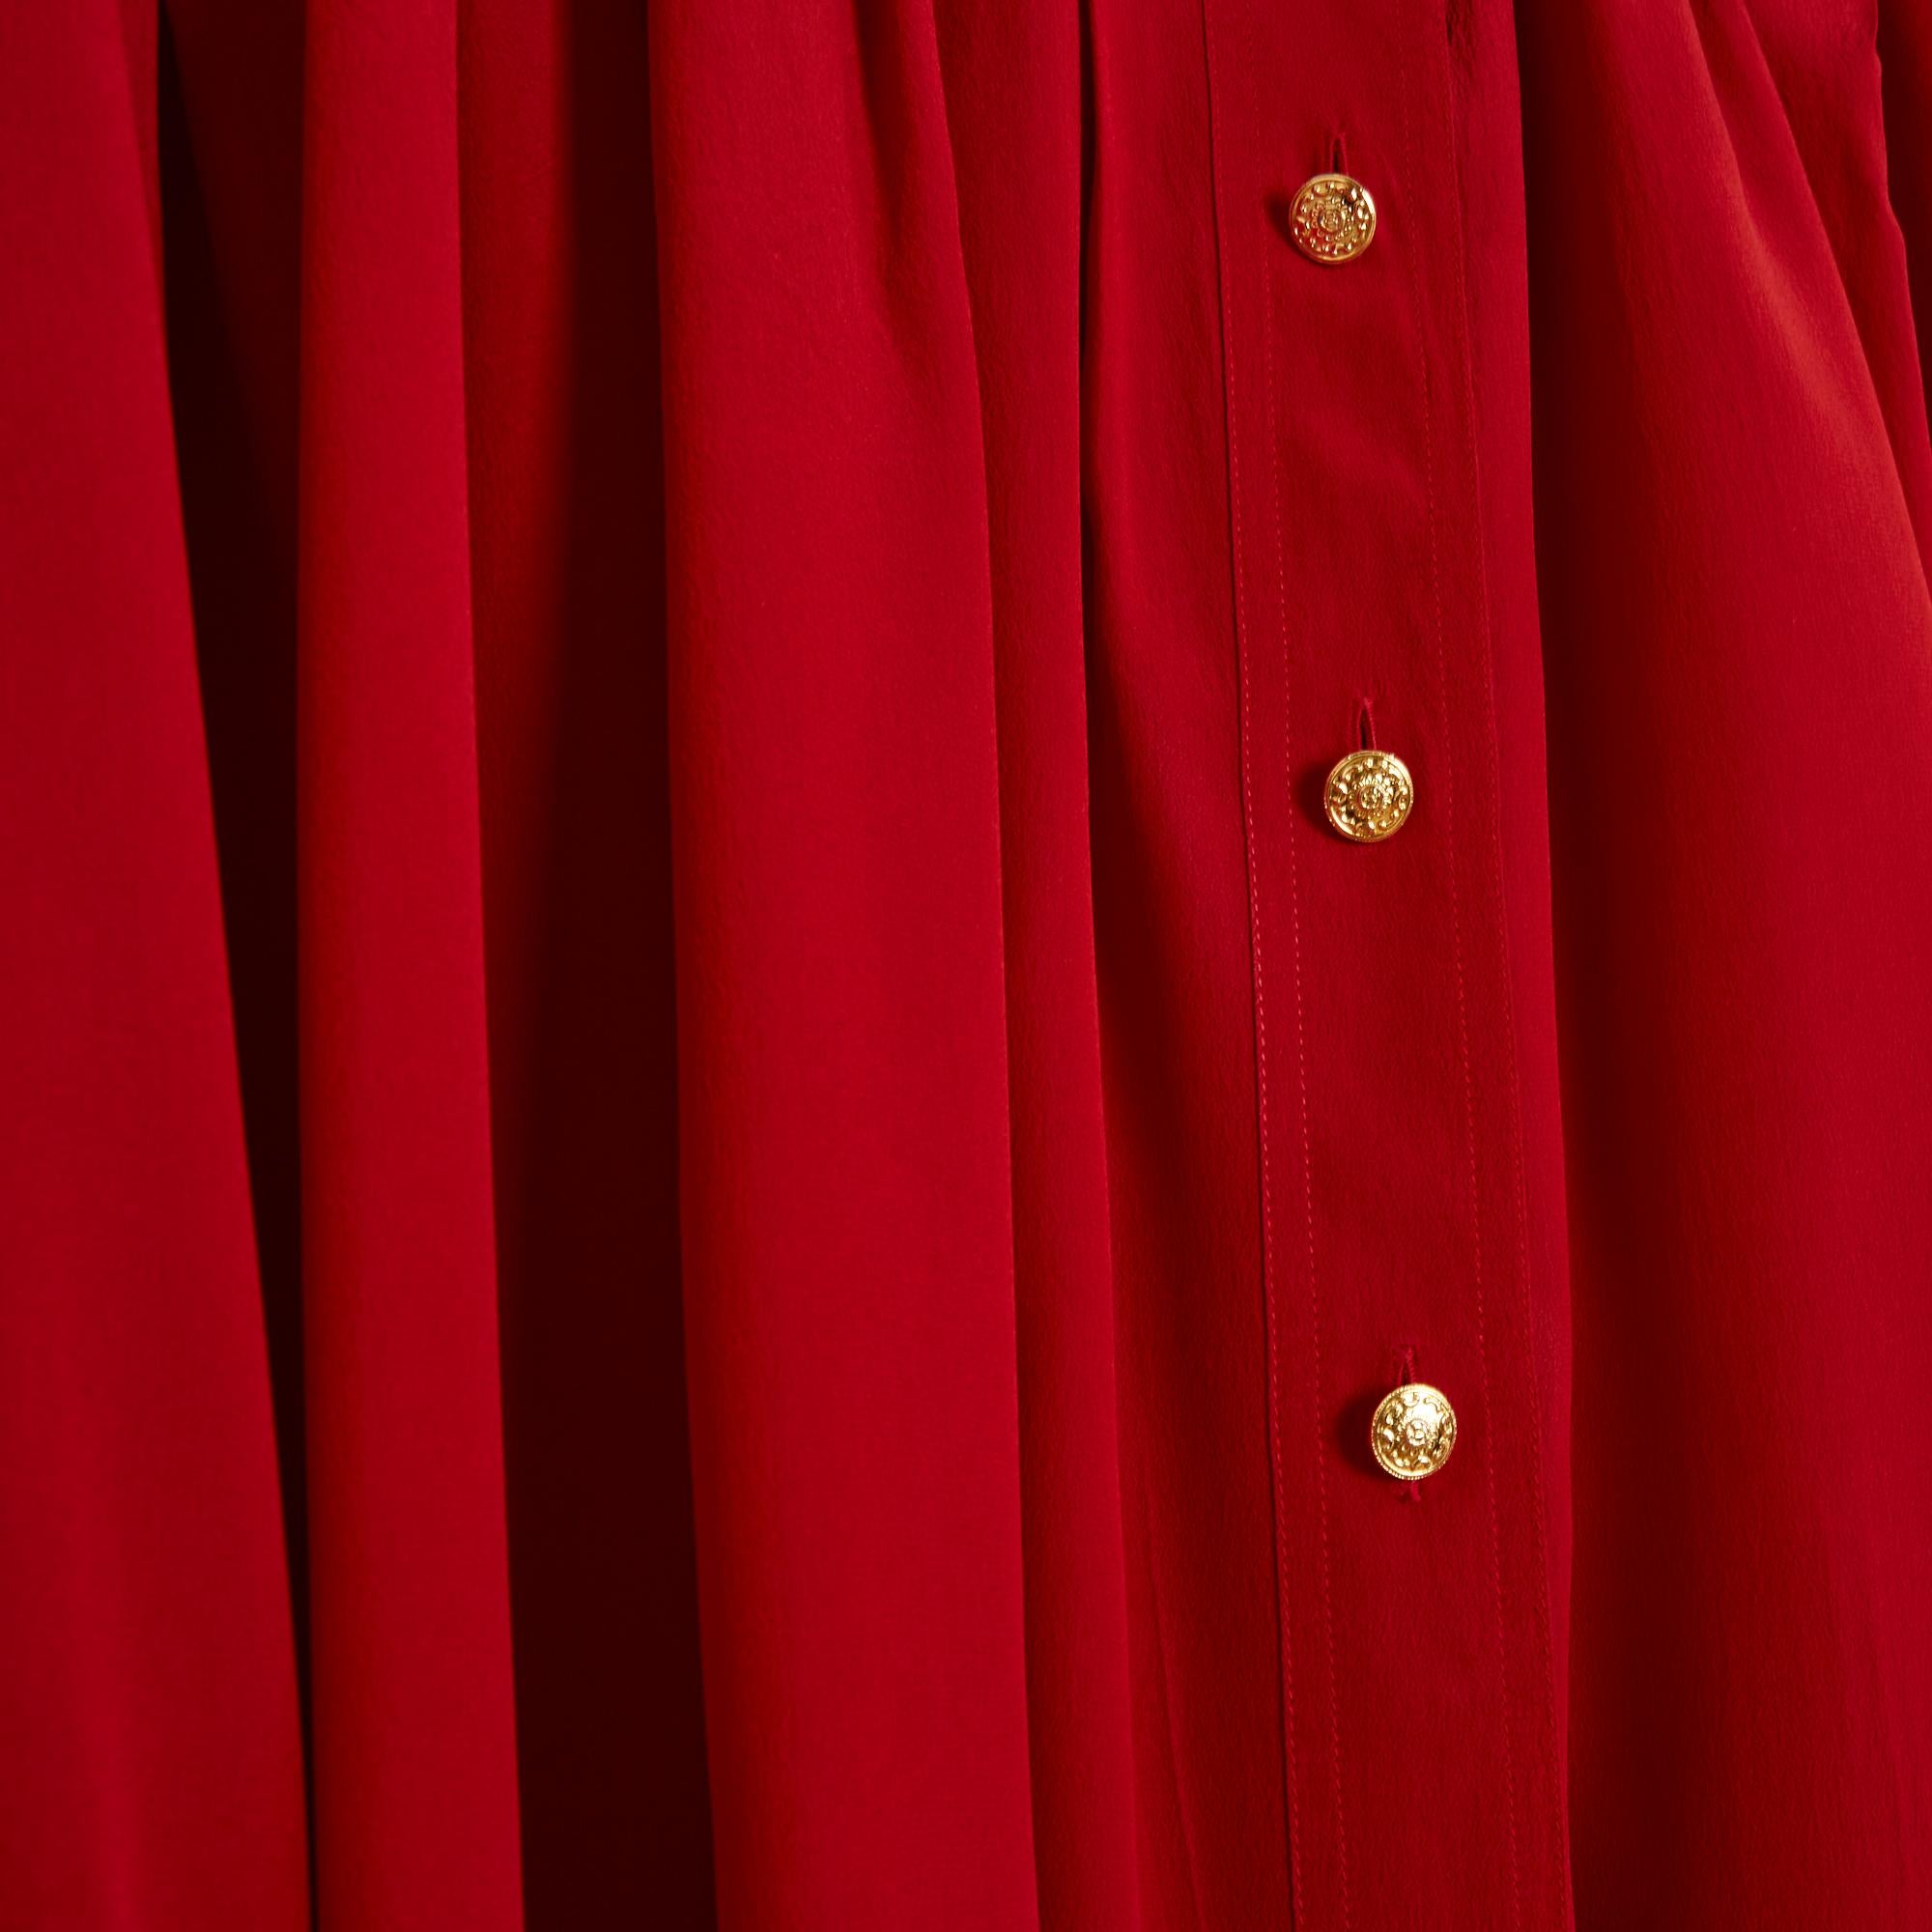 Chanel Top Bluse circa 1989 aus rotem Seidenkrepp, vorne und hinten von den Schultern her plissiert, Hemdkragen geschlossen mit 6 CC-Logo-Knöpfen aus goldenem Metall, lange Ärmel geschlossen mit passenden Manschettenknöpfen. Größe 40FR ungefähr